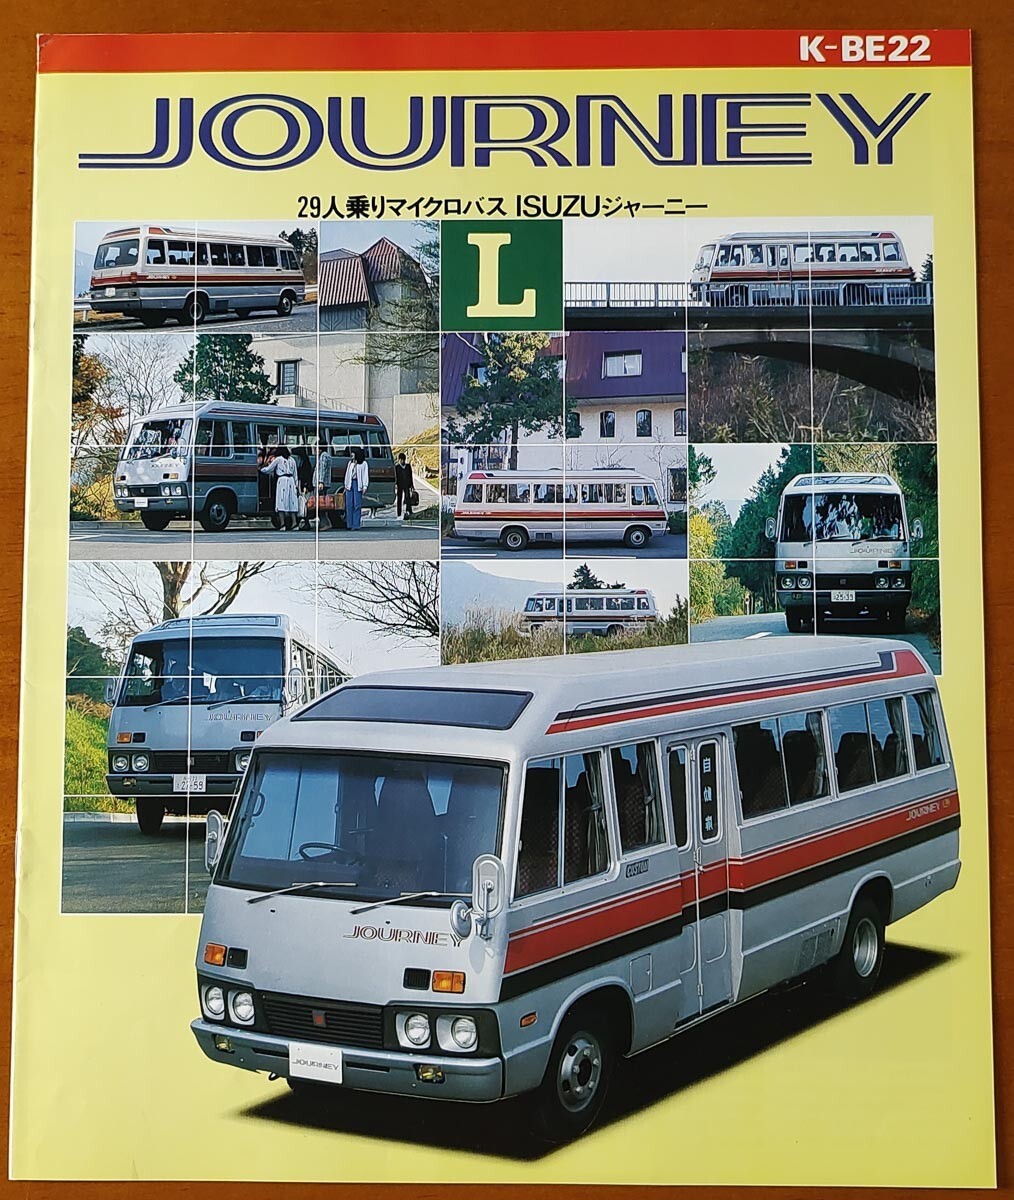 いすゞ ジャーニー L 昭和55年4月 JOURNEY L 29人乗マイクロバス K-BE22 BE22 6ページの画像1